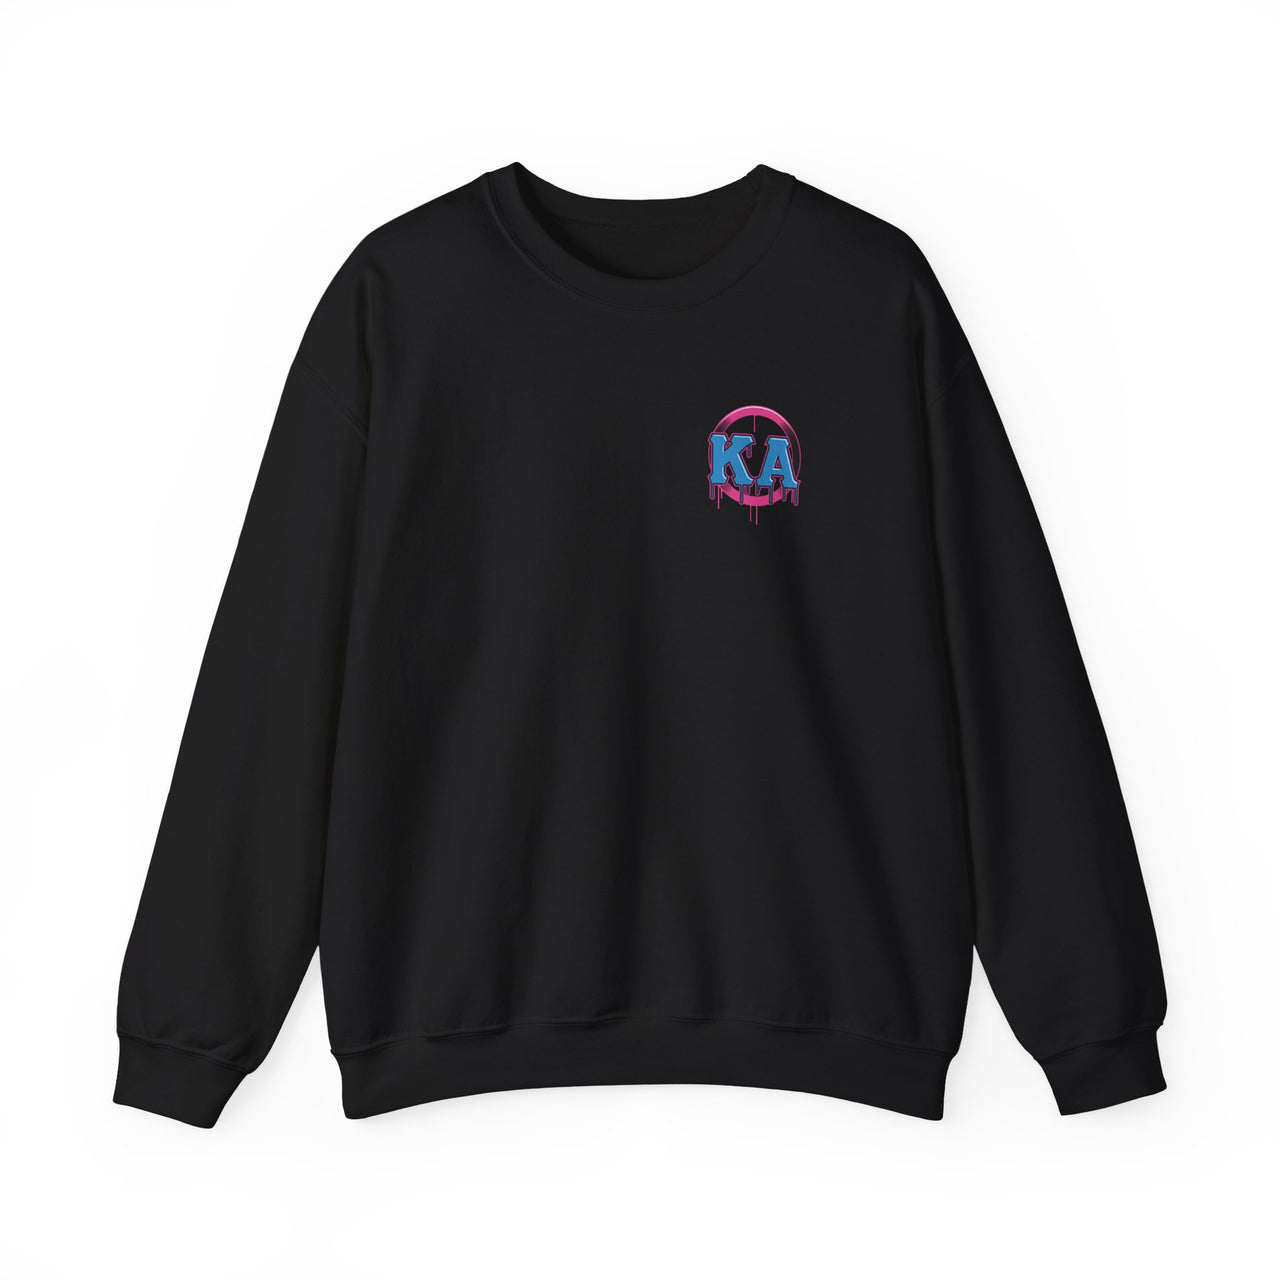 Kappa Alpha Graphic Crewneck Sweatshirt | Liberty Rebel